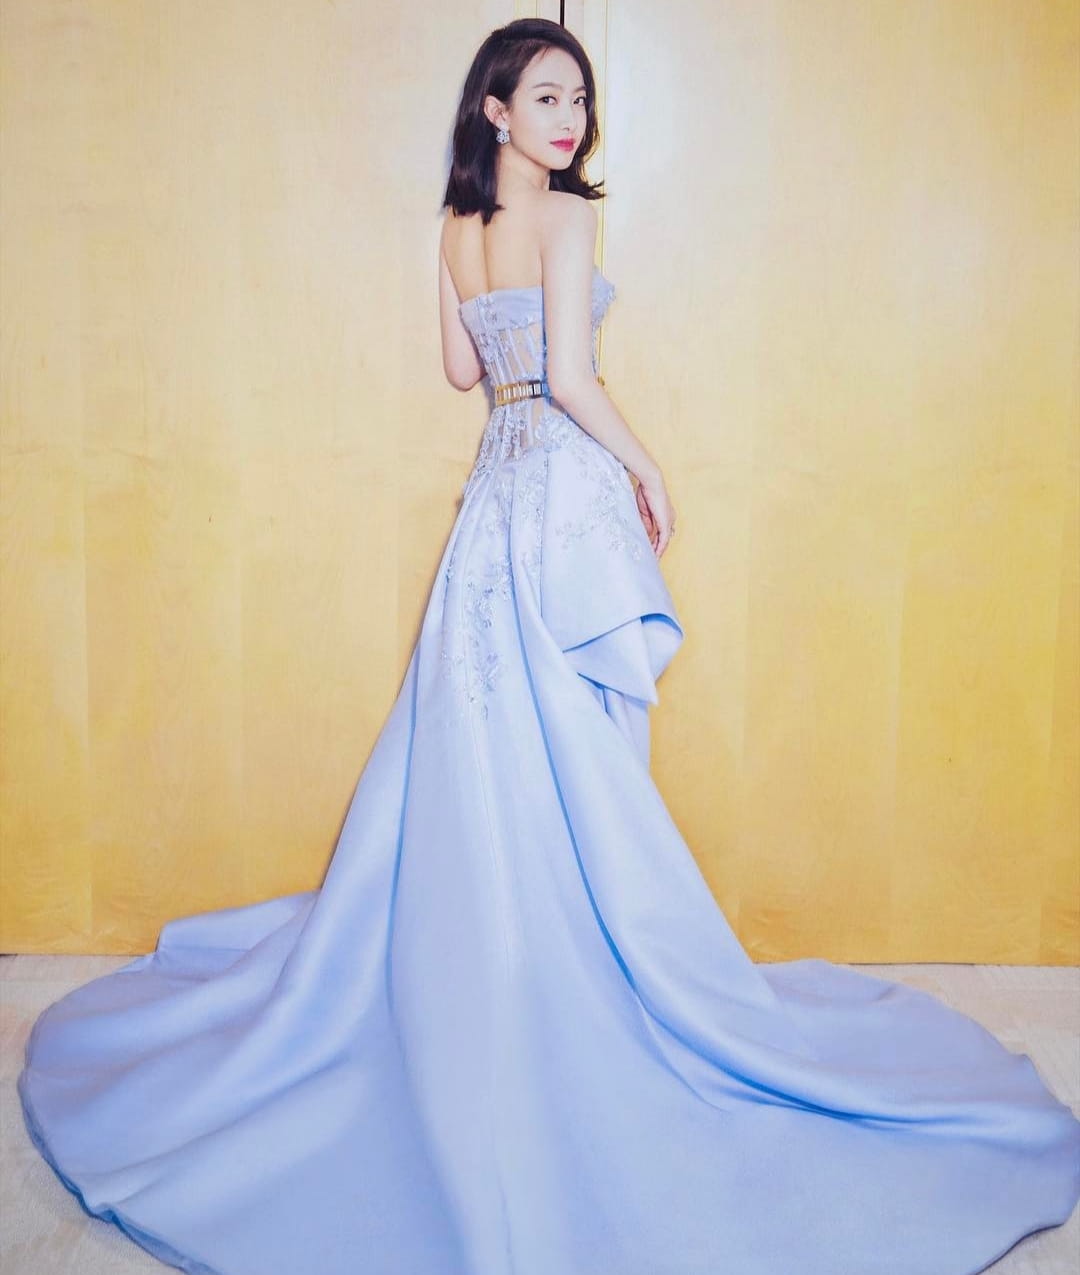 9 Potret Anggun Victoria f(x) Dalam Balutan Gaun. Bak Princess Disney!